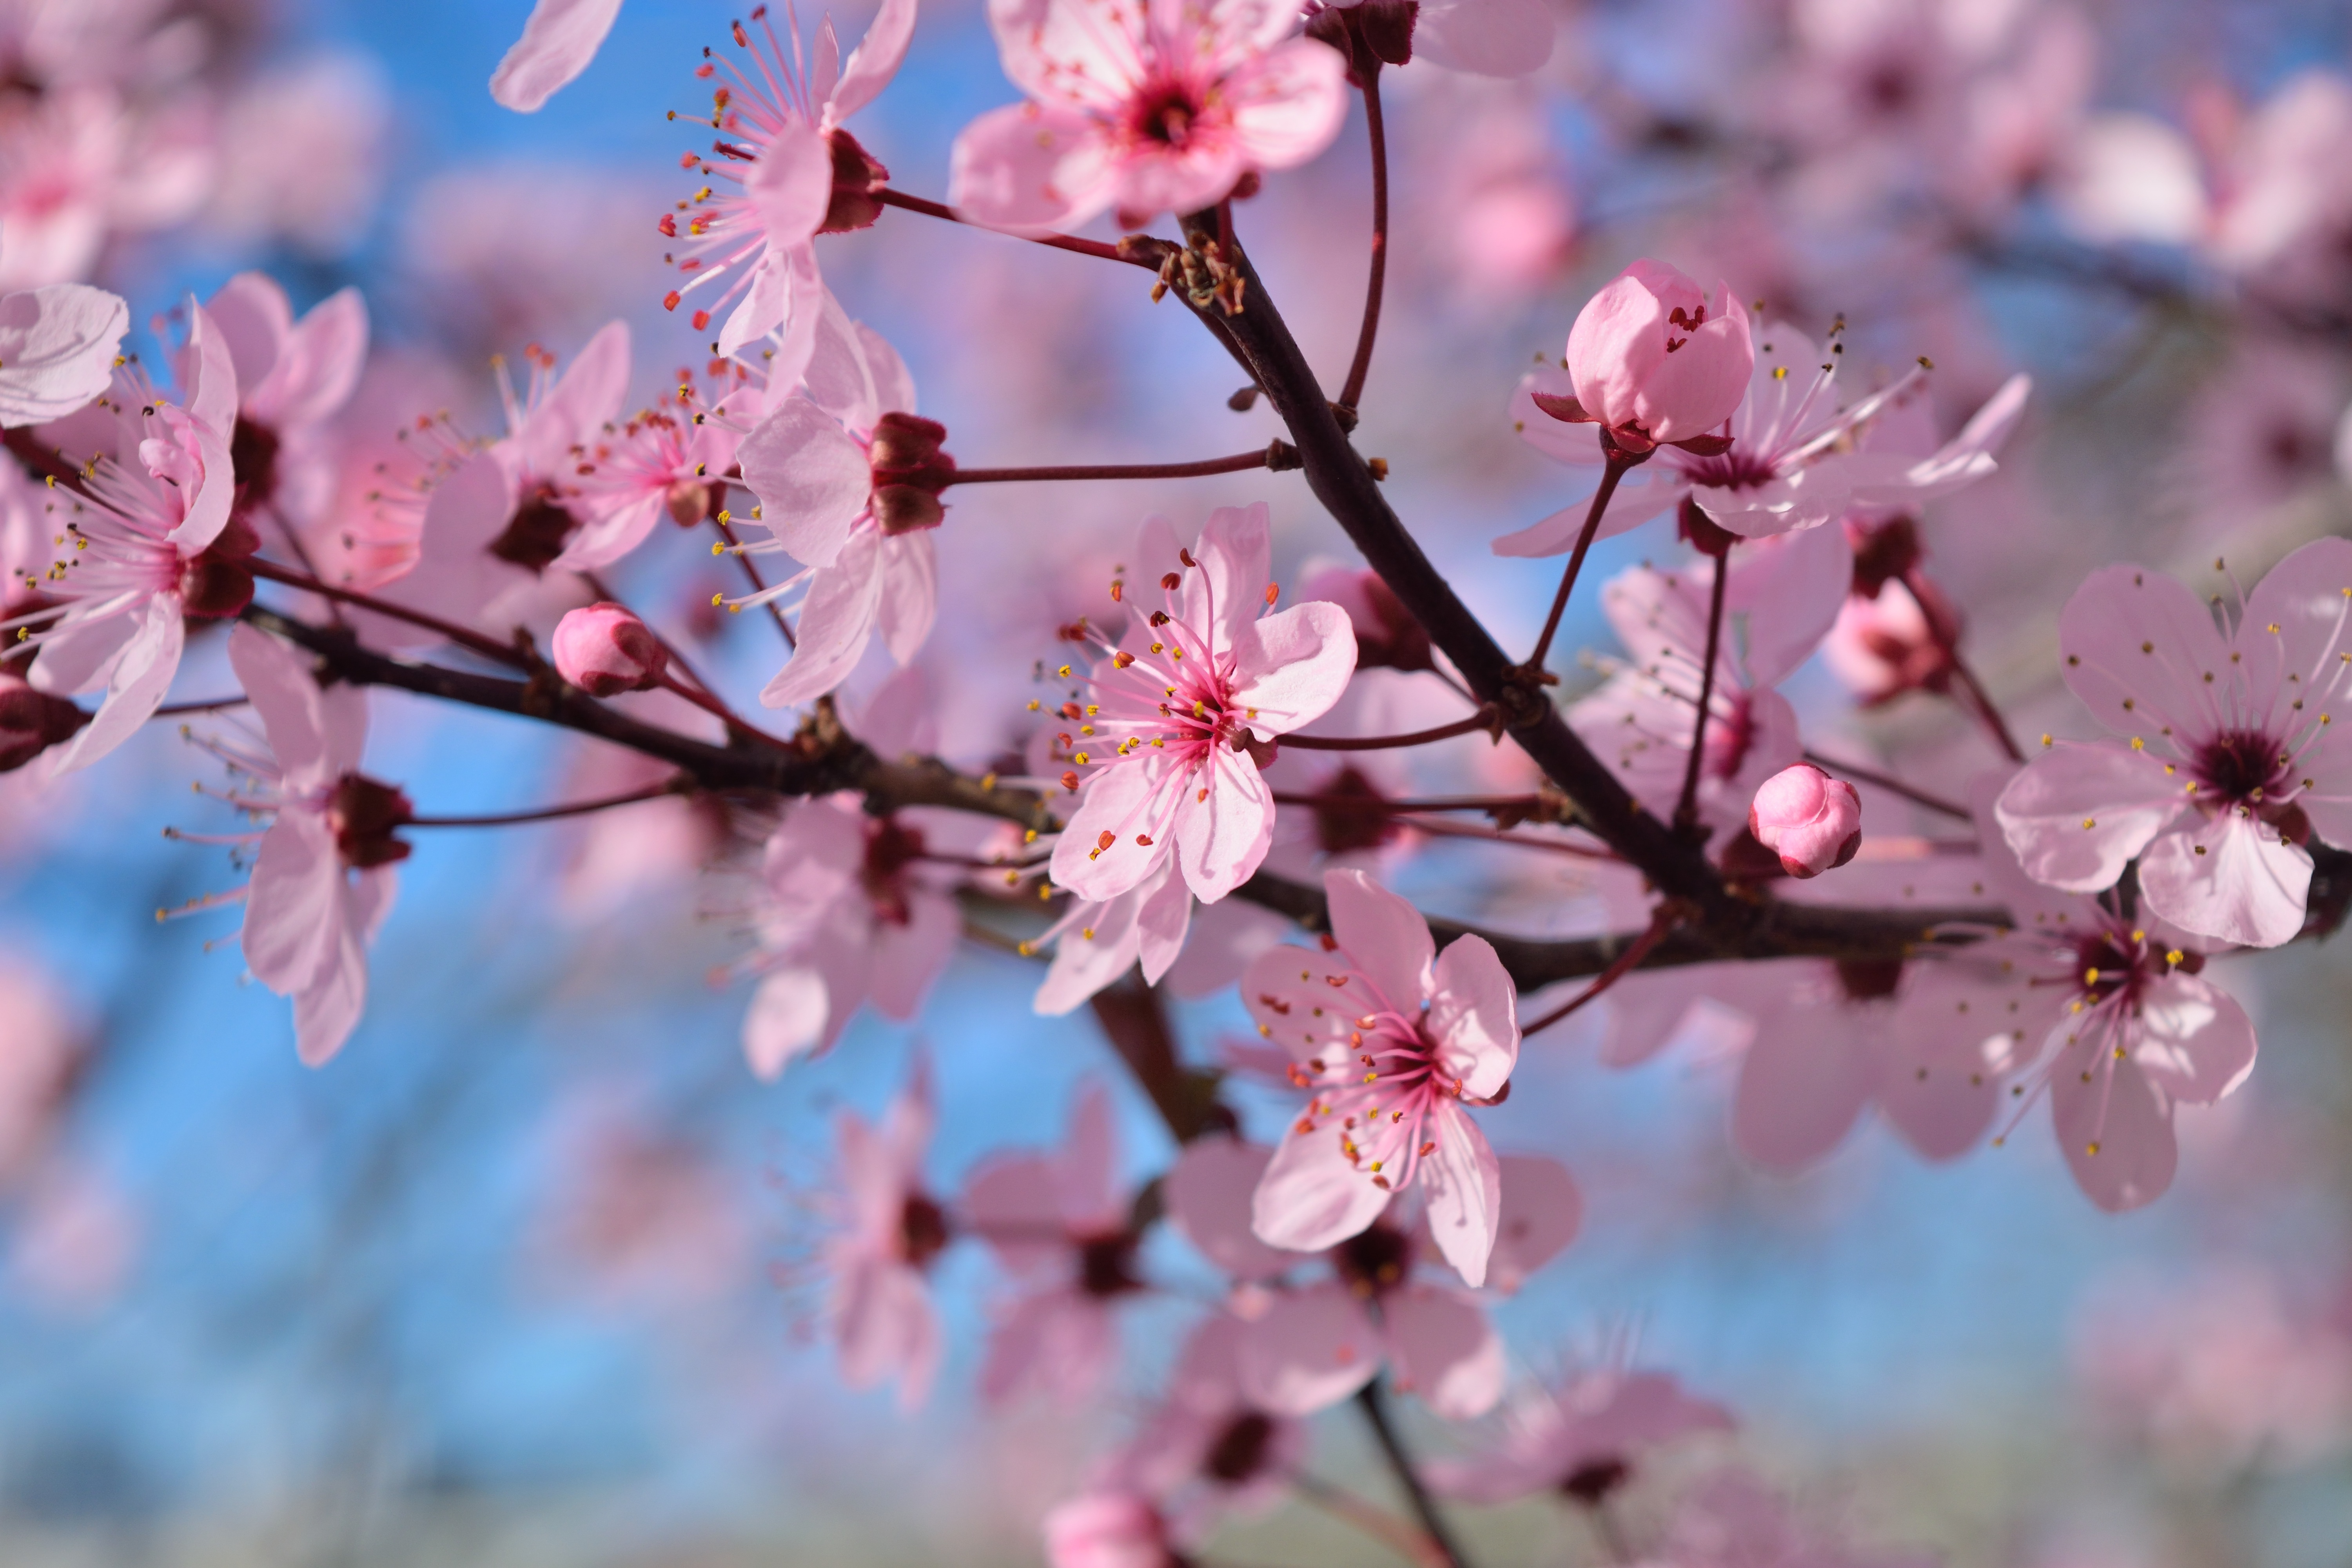 Spring Season Flowers, HD Flowers, 4k Wallpapers, Images ...